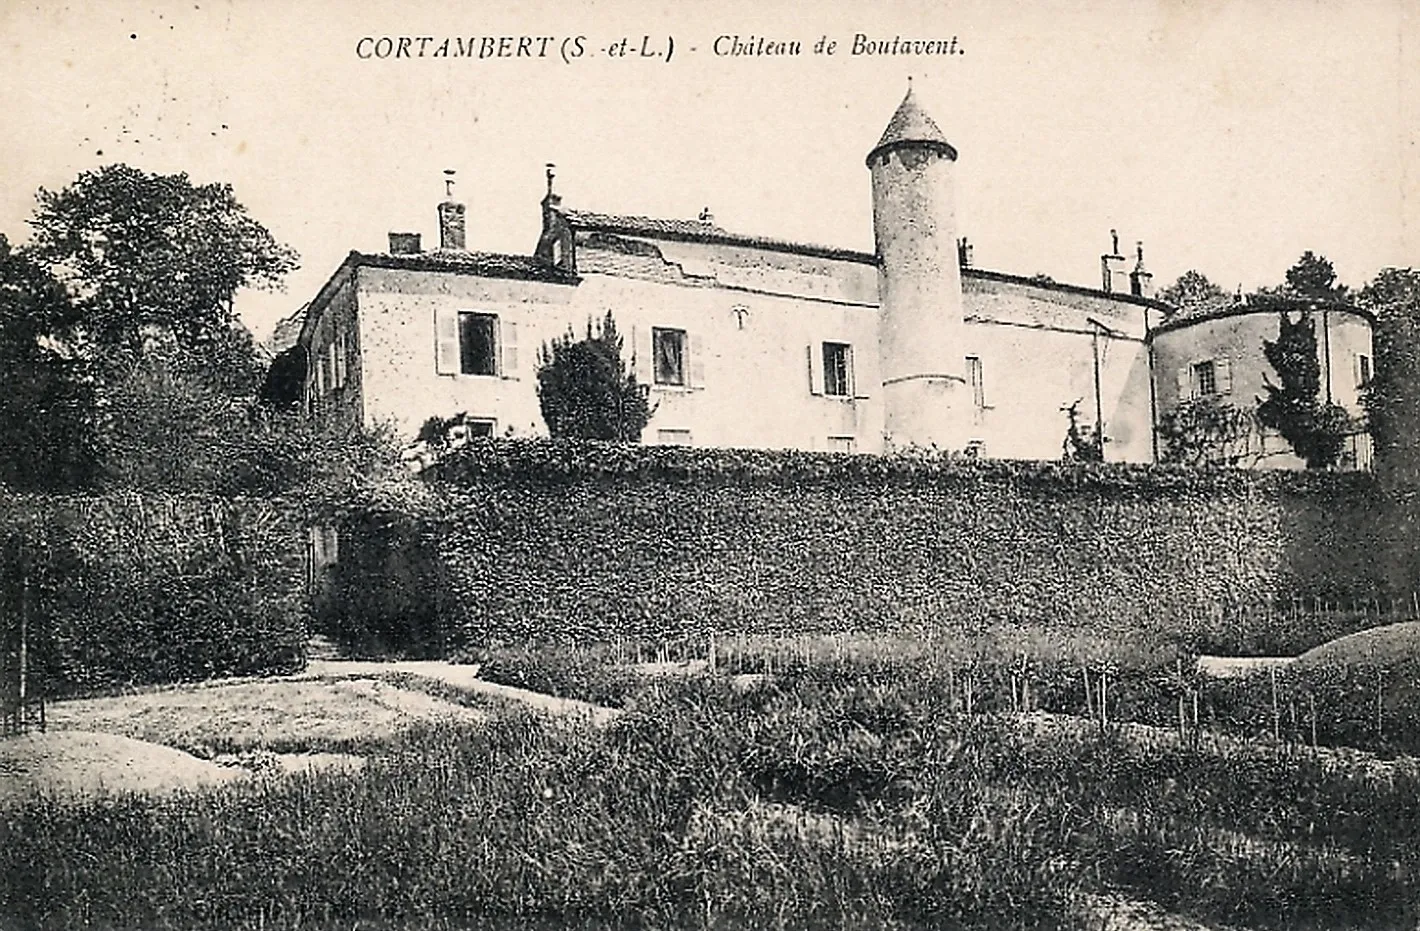 Photo showing: Le château de Boutavant de Cortambert Saône-et-Loire